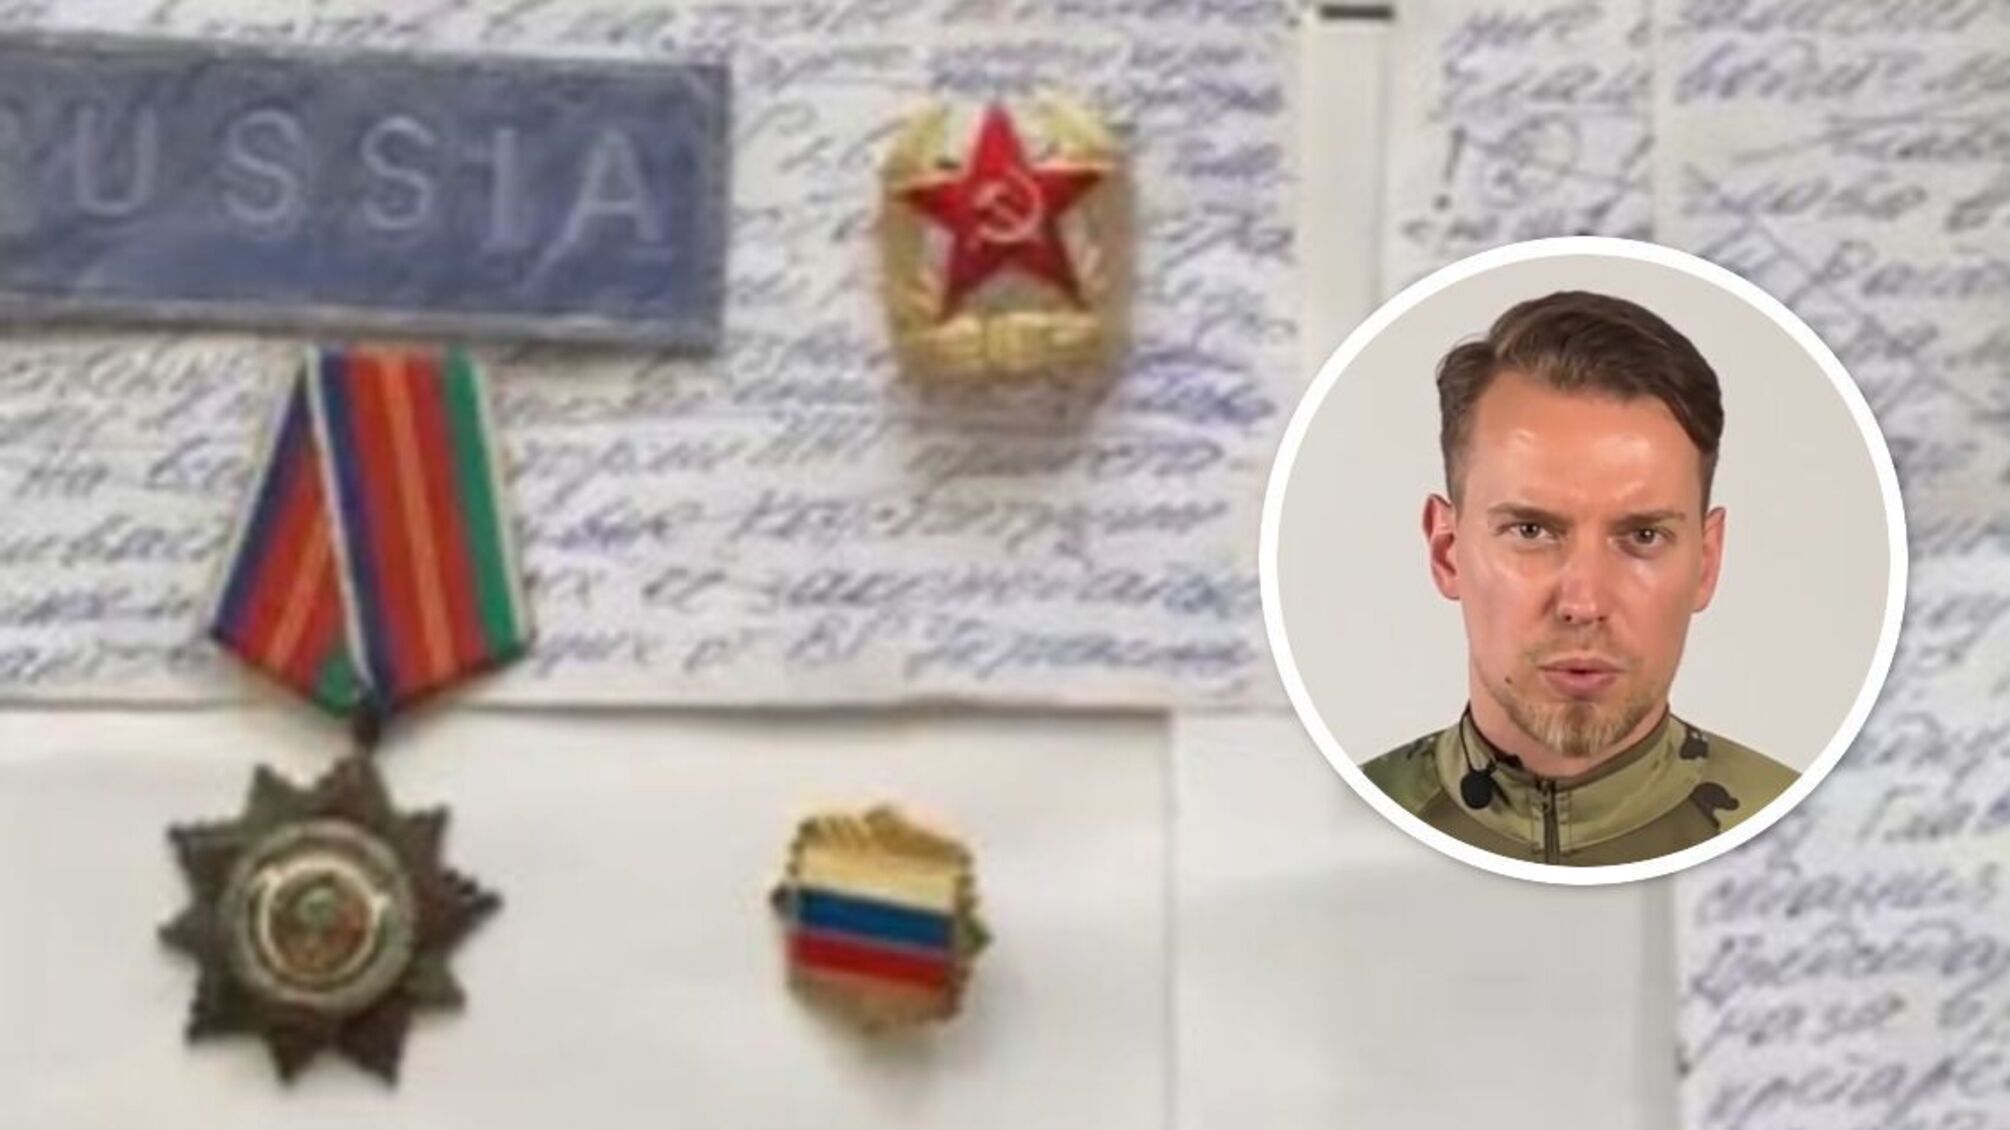 СБУ викрила депутата, який готувався проголосити 'Миколаївську народну республіку'